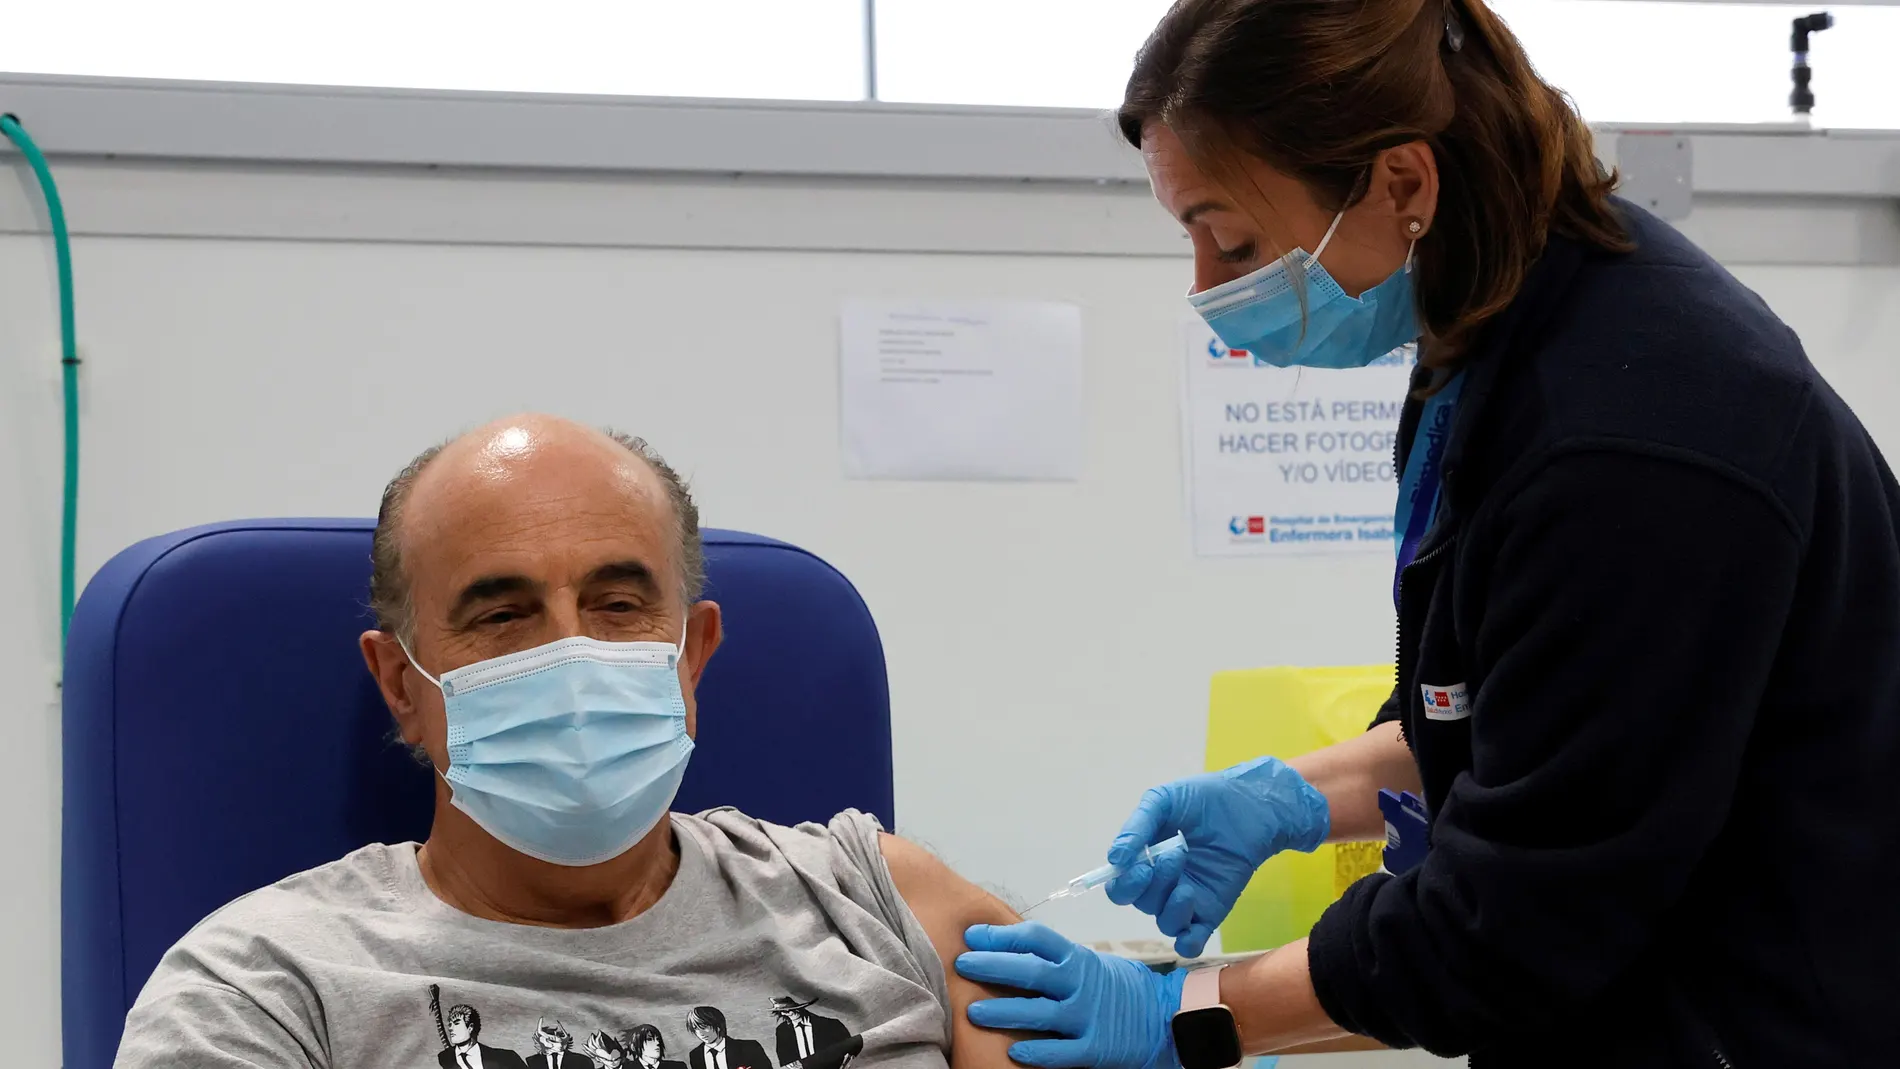 El viceconsejero de Salud Pública y Plan COVID-19 de la Comunidad de Madrid, Antonio Zapatero, acudió al Hospital público Isabel Zendal, este miércoles, para recibir la primera dosis de la vacuna de Astra Zeneca, tal y como le corresponde dentro de las franjas de edad del plan de vacunación